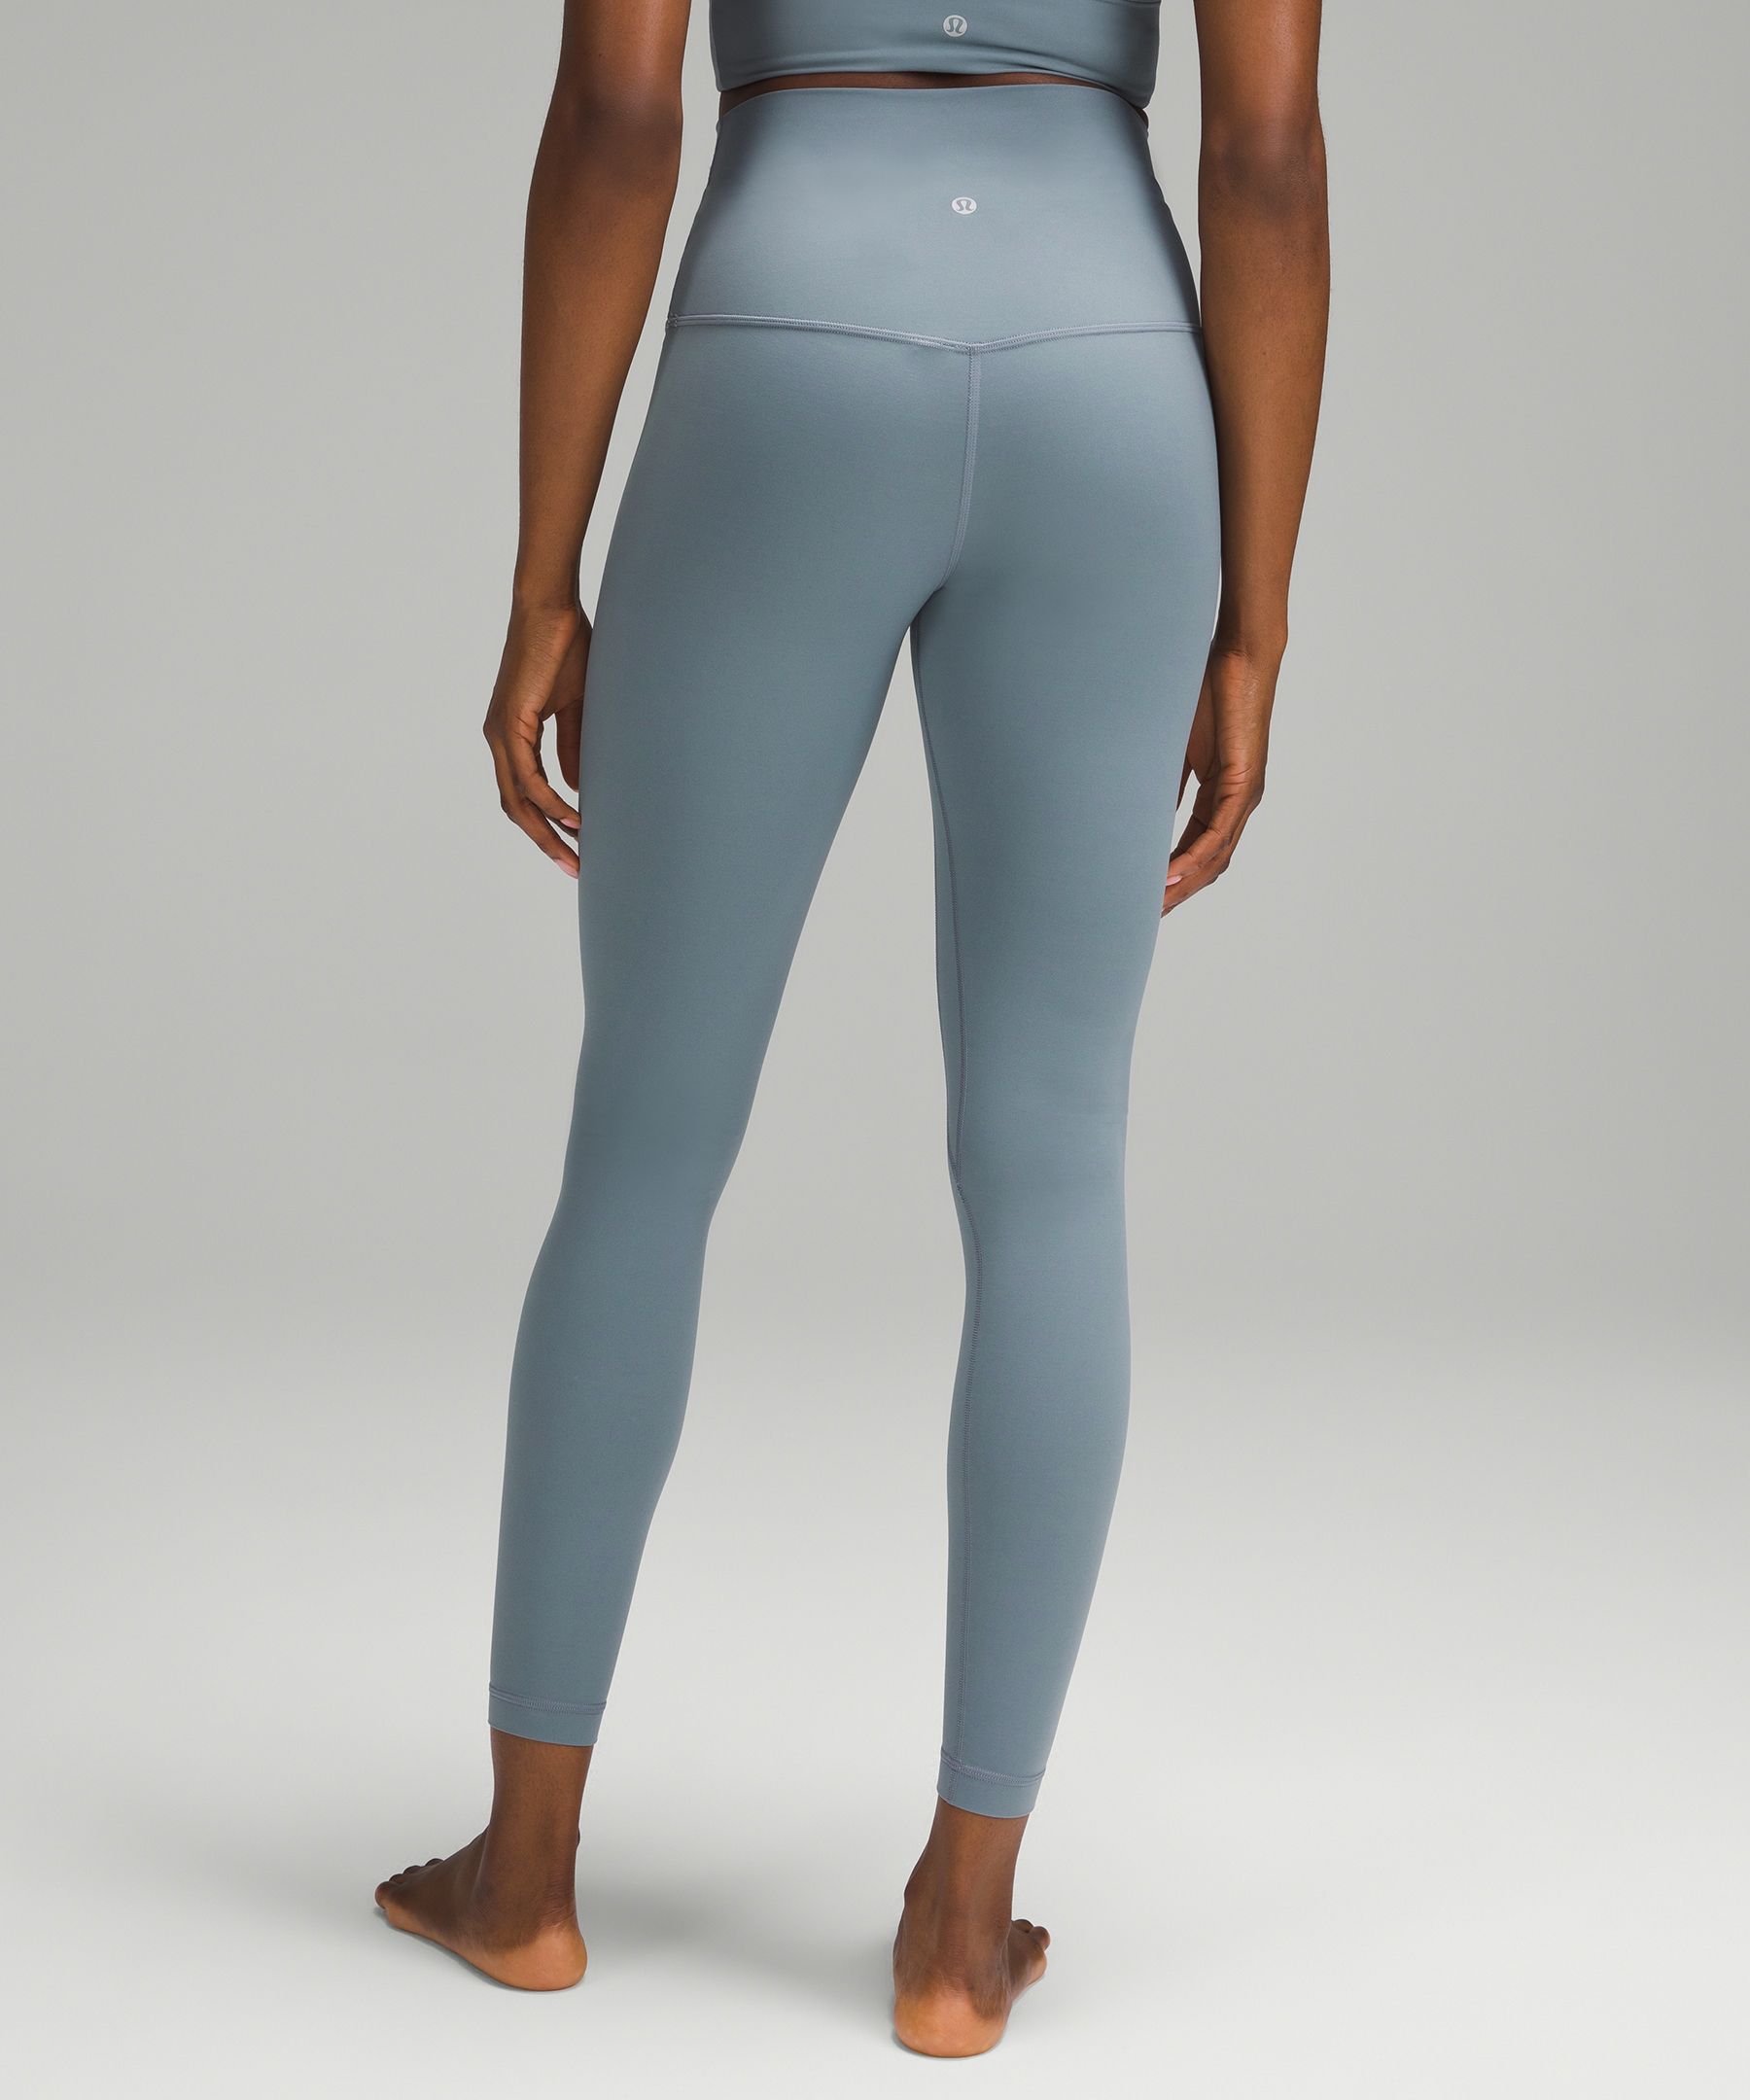 Lululemon Align™ Super-High-Rise Pant 28, Women's Leggings/Tights